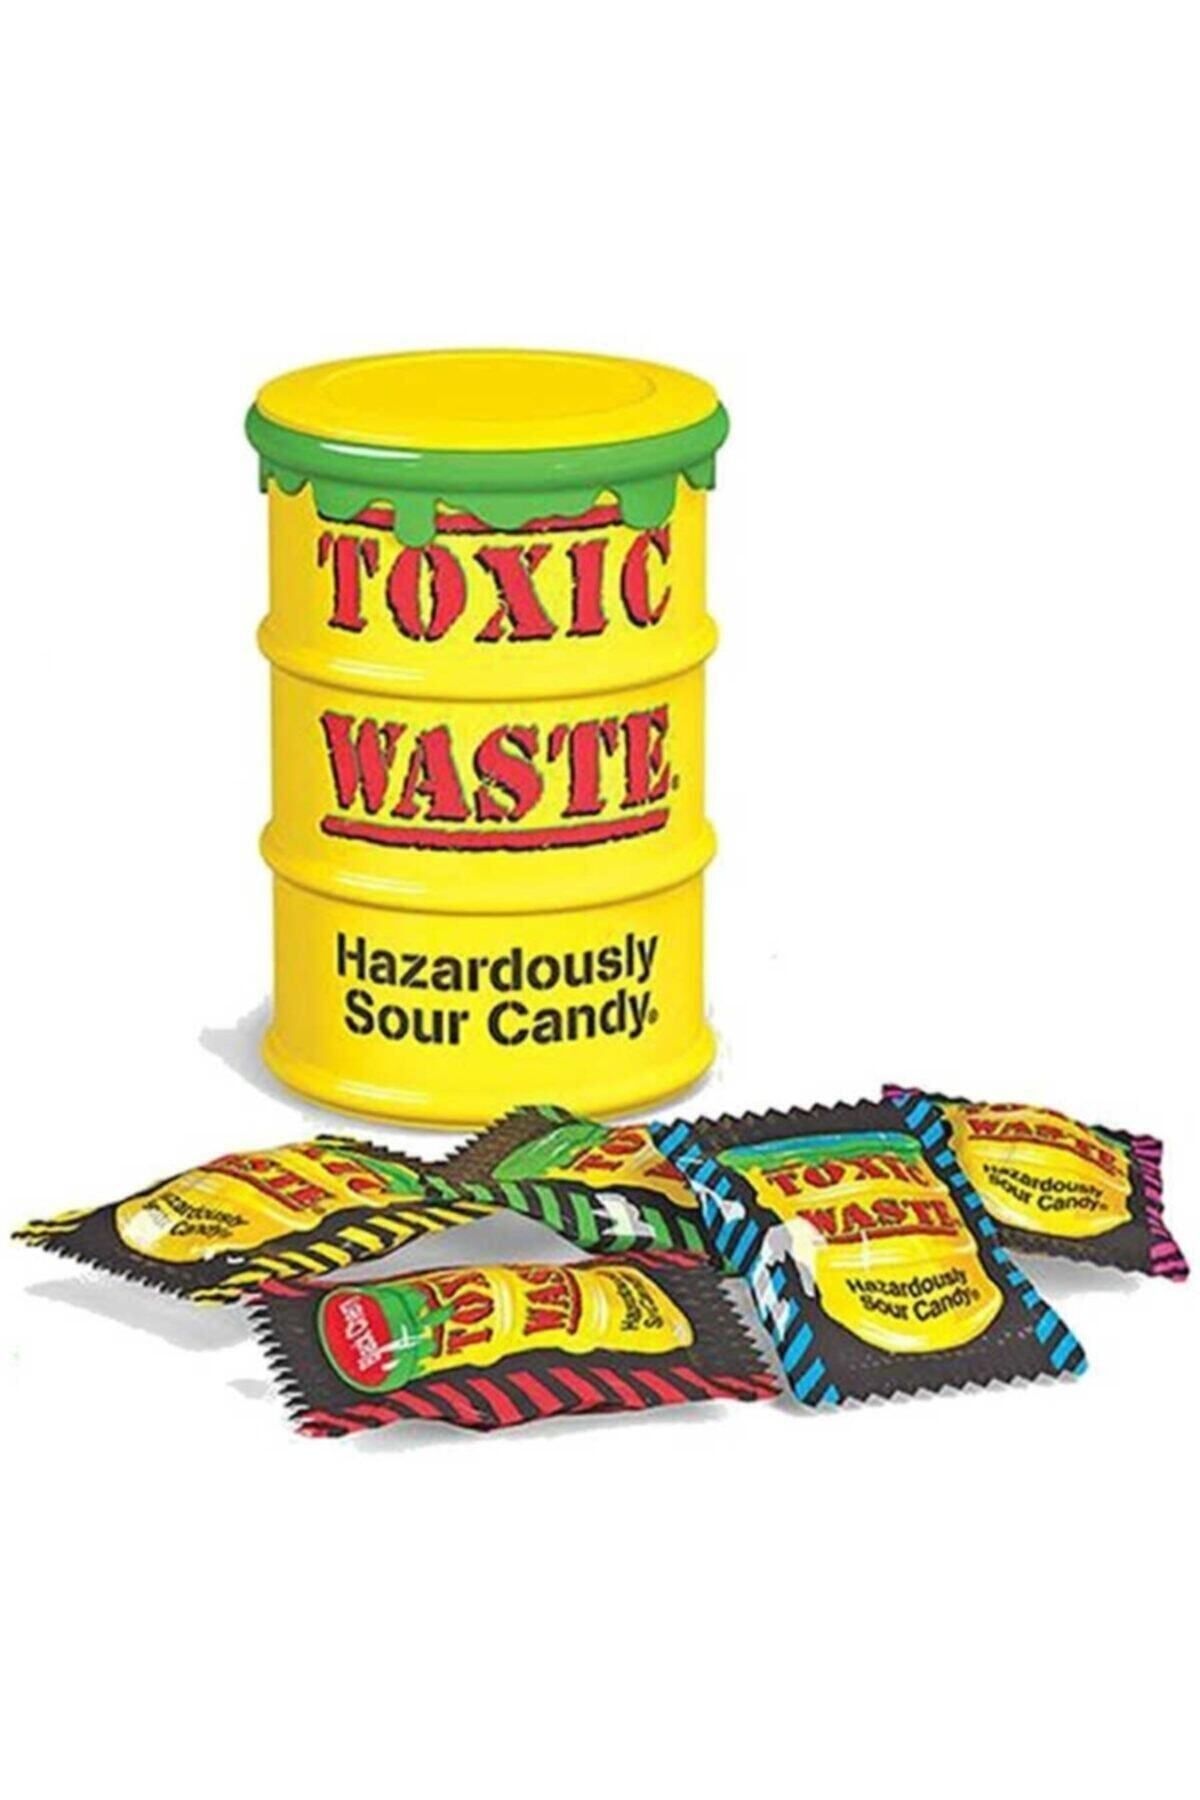 Сколько стоит токсик. Toxic waste конфеты. Кислые конфеты Токсик. Кислые конфеты Toxic waste. Токсик Вейст самые кислые конфеты.